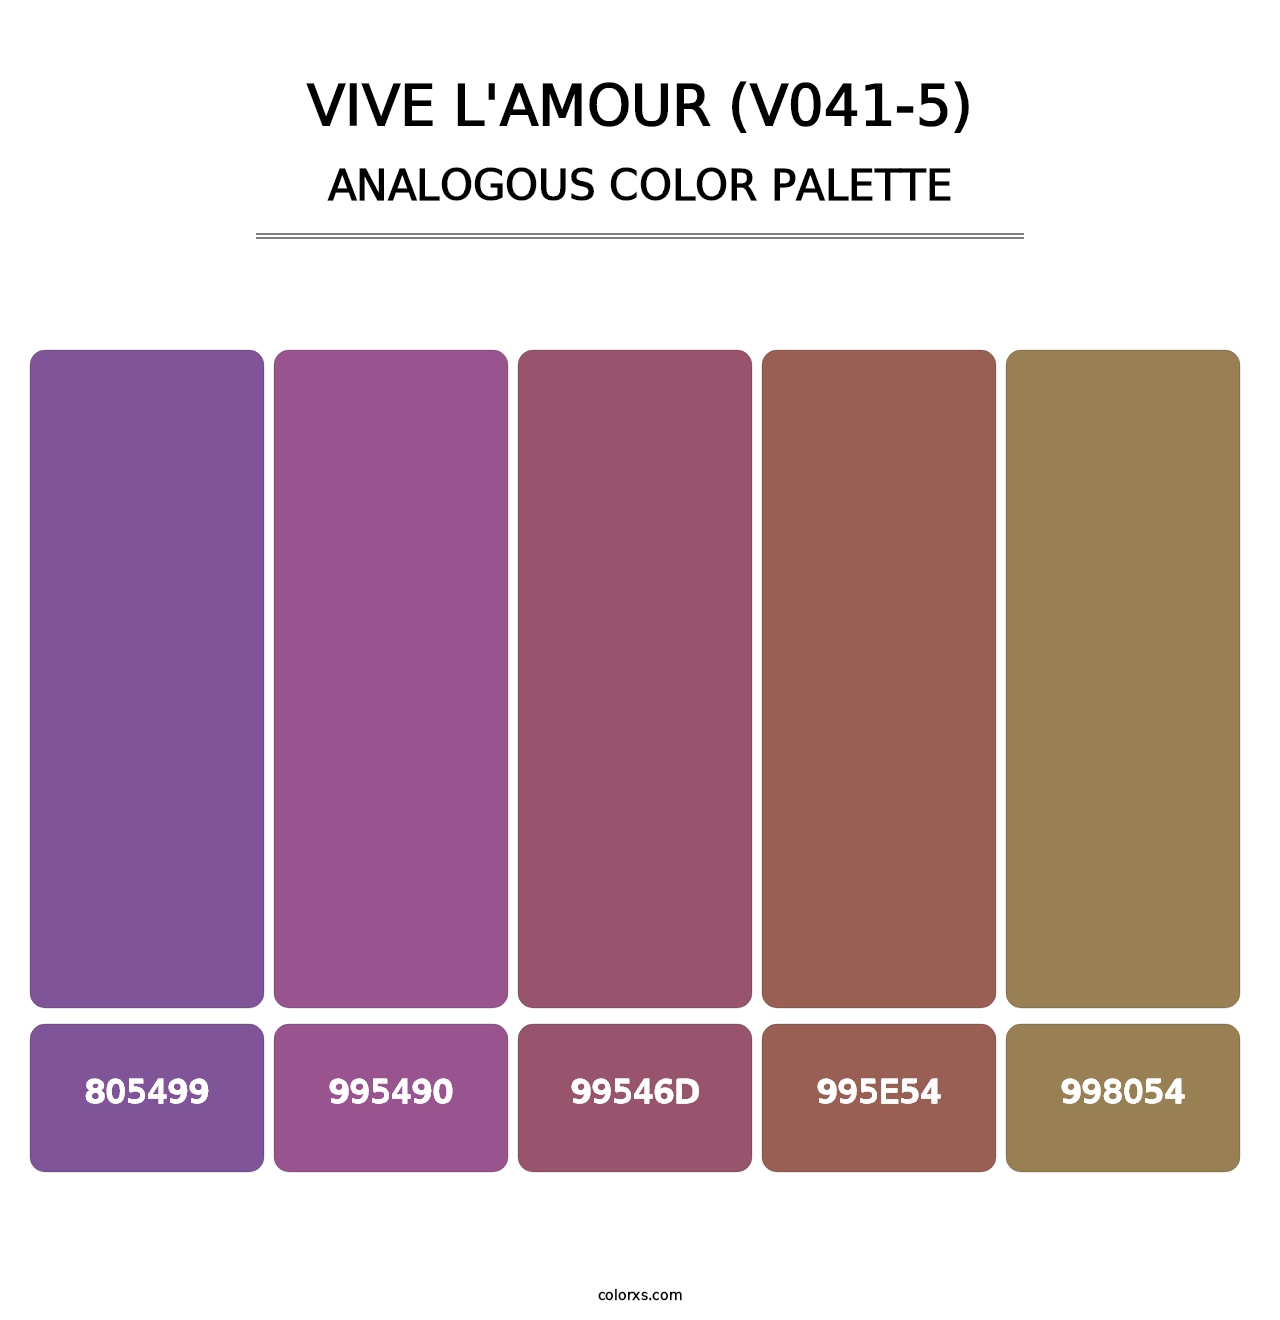 Vive l'amour (V041-5) - Analogous Color Palette